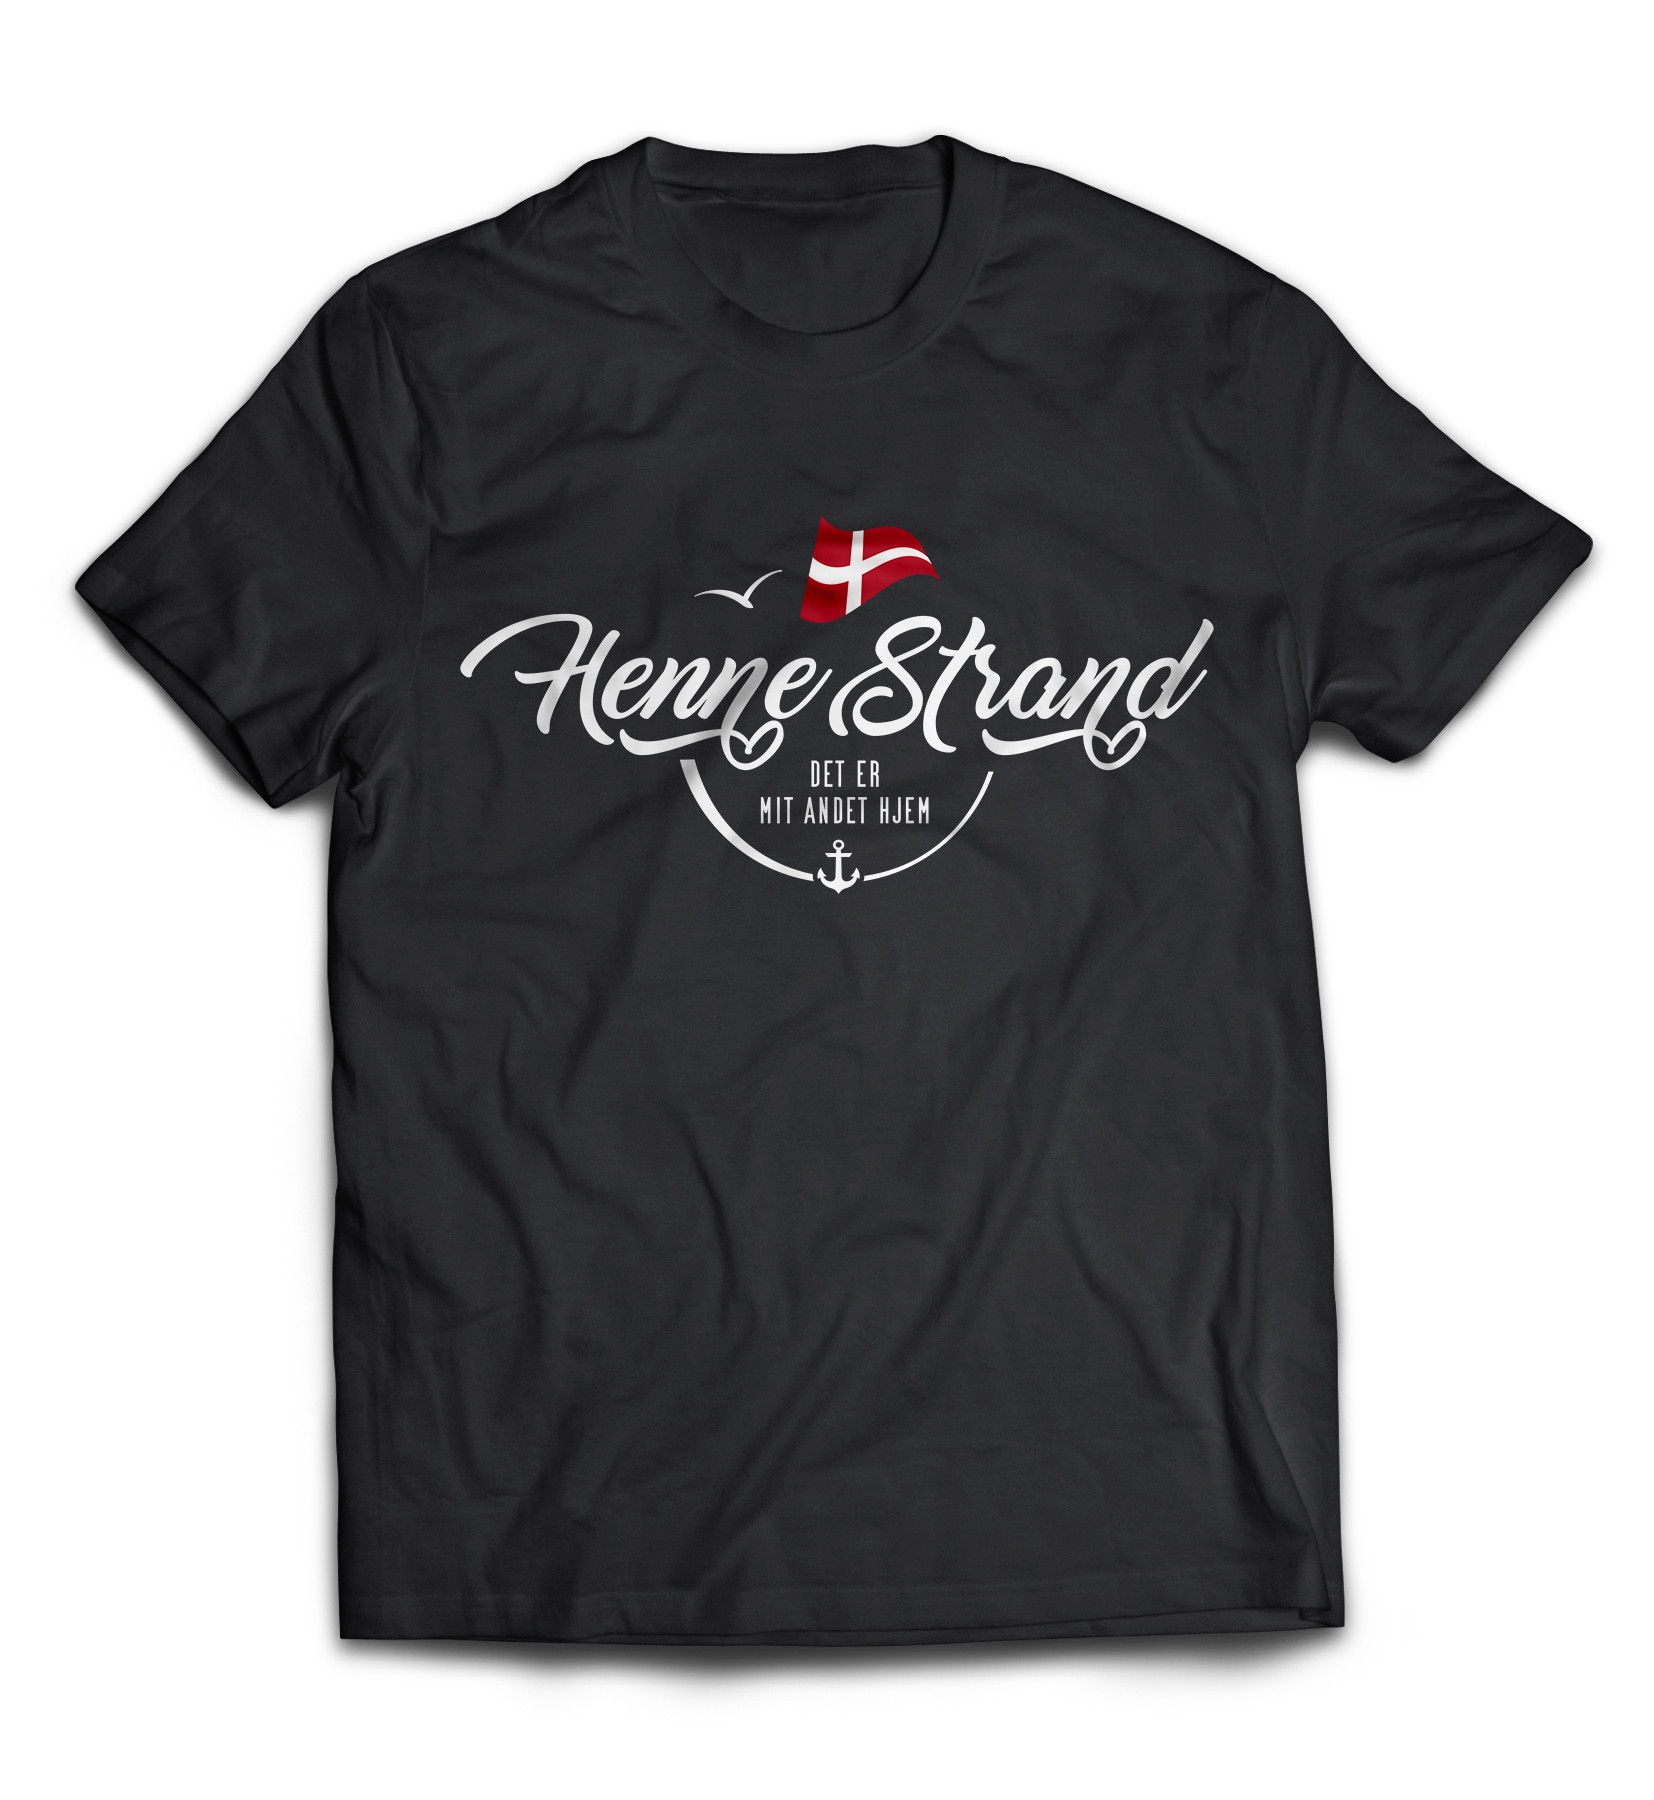 Dänemark - Meine zweite Heimat - T-Shirt "Henne Strand"